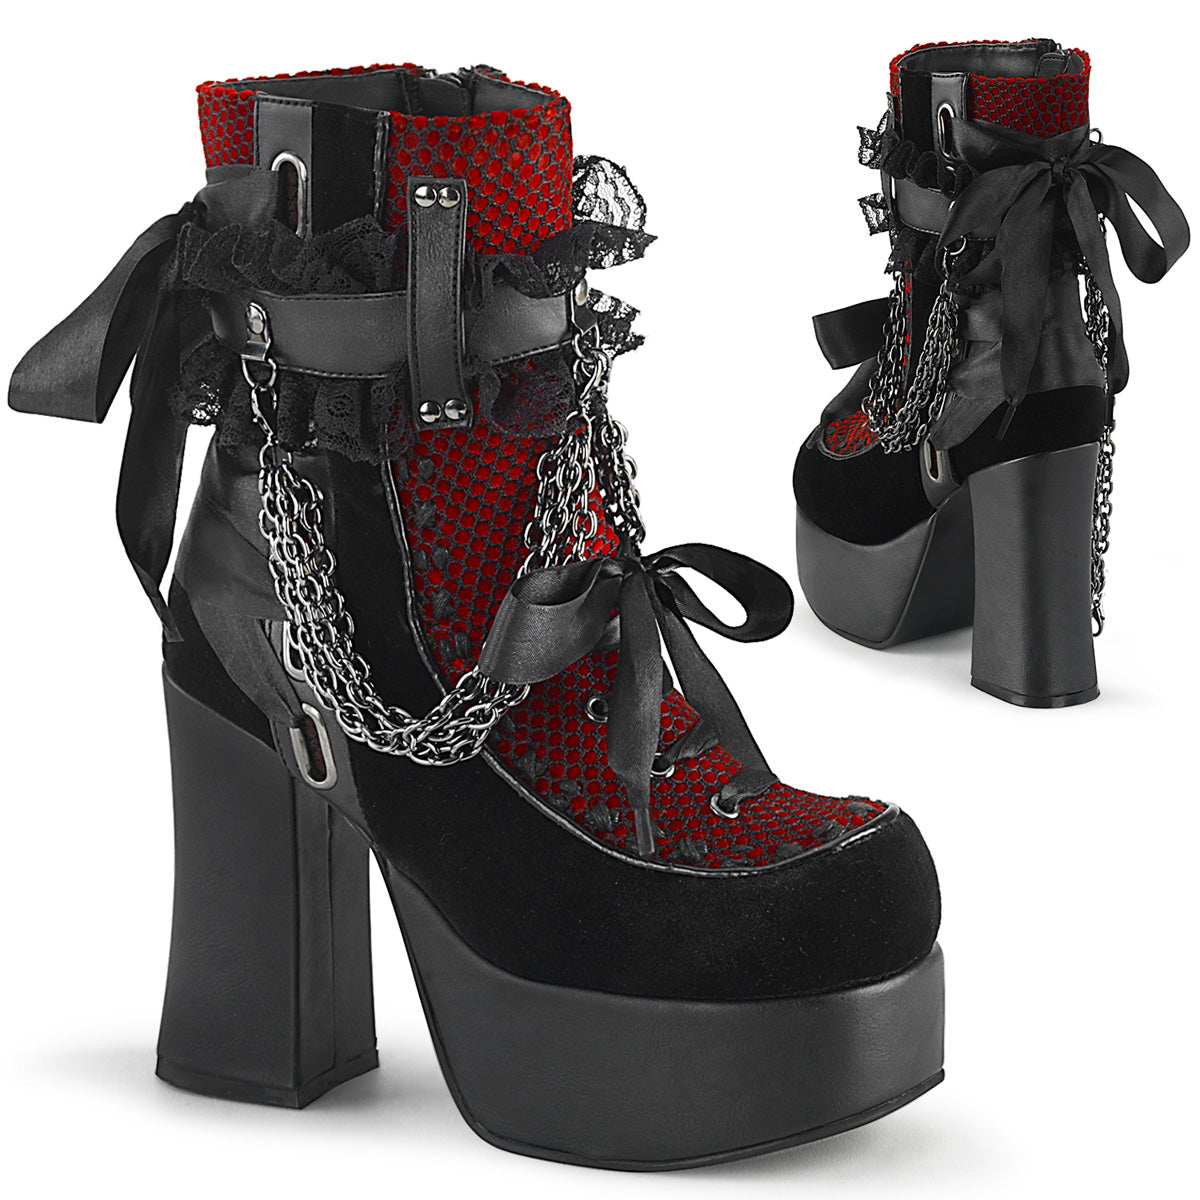 CHARADE-110 Alternative Footwear Demonia Women's Ankle Boots Blk V. Le-Red-Blk Velvet-Fishnet Overlay